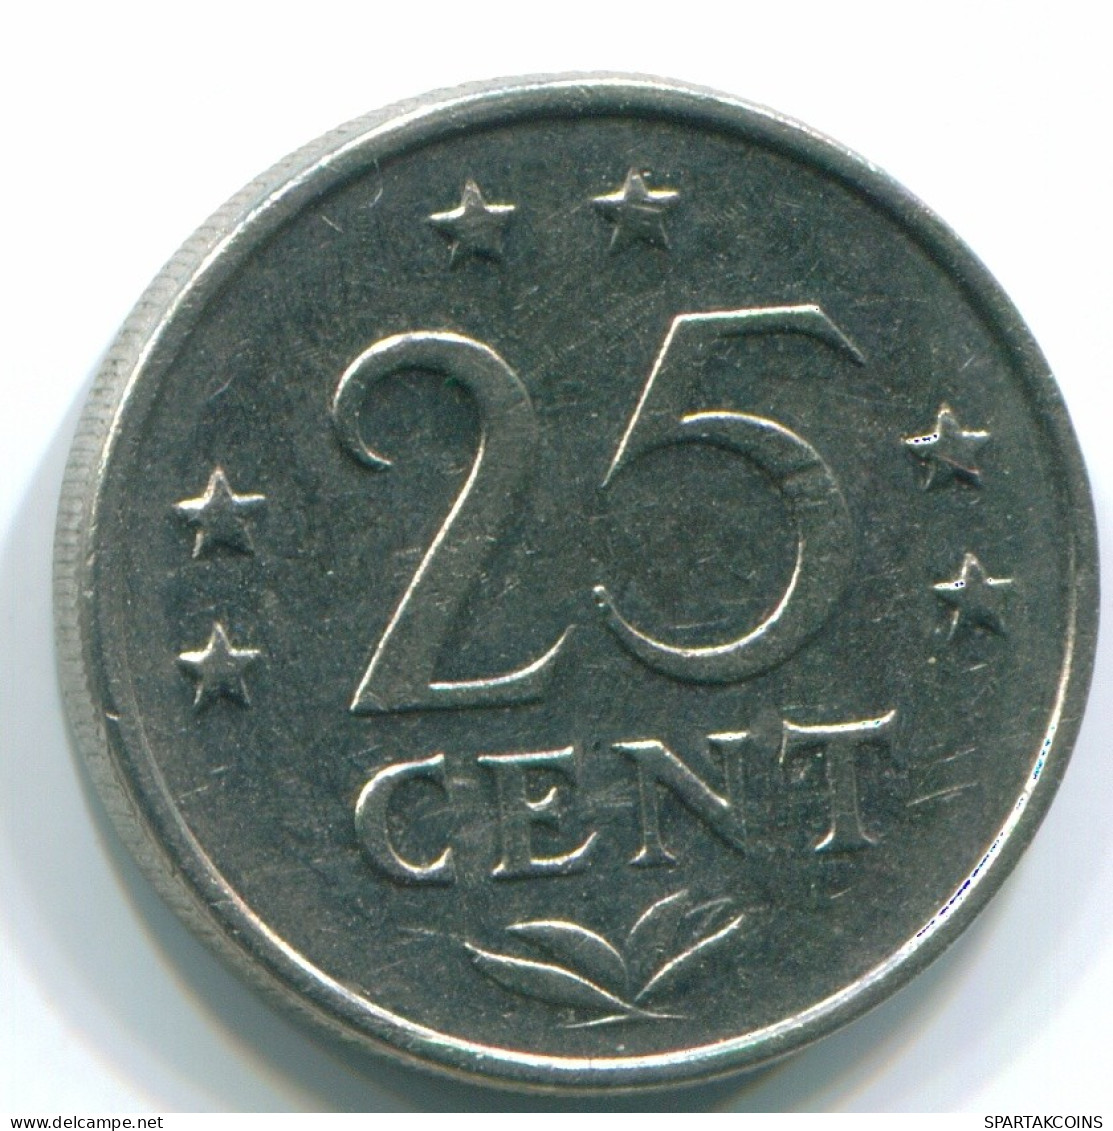 25 CENTS 1971 NIEDERLÄNDISCHE ANTILLEN Nickel Koloniale Münze #S11569.D.A - Antillas Neerlandesas